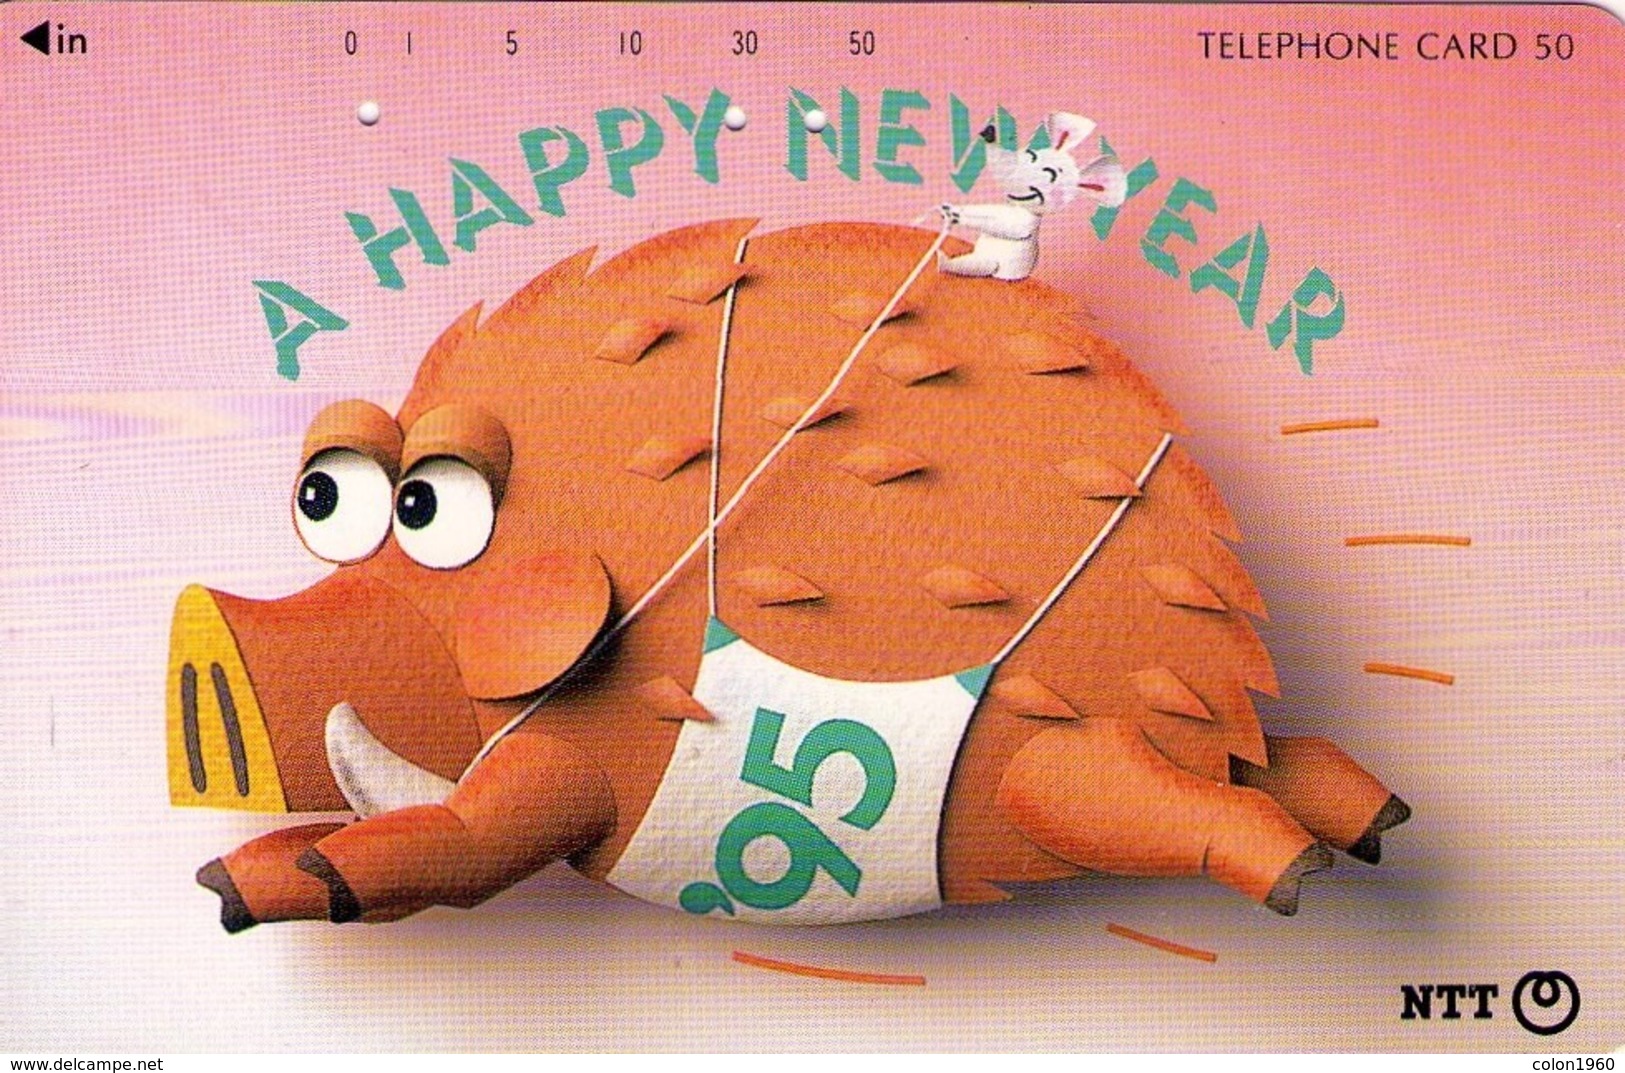 JAPON. Happy New Year '95 - Boar. 11/1994. JP-111-046 C. (091) - Japón